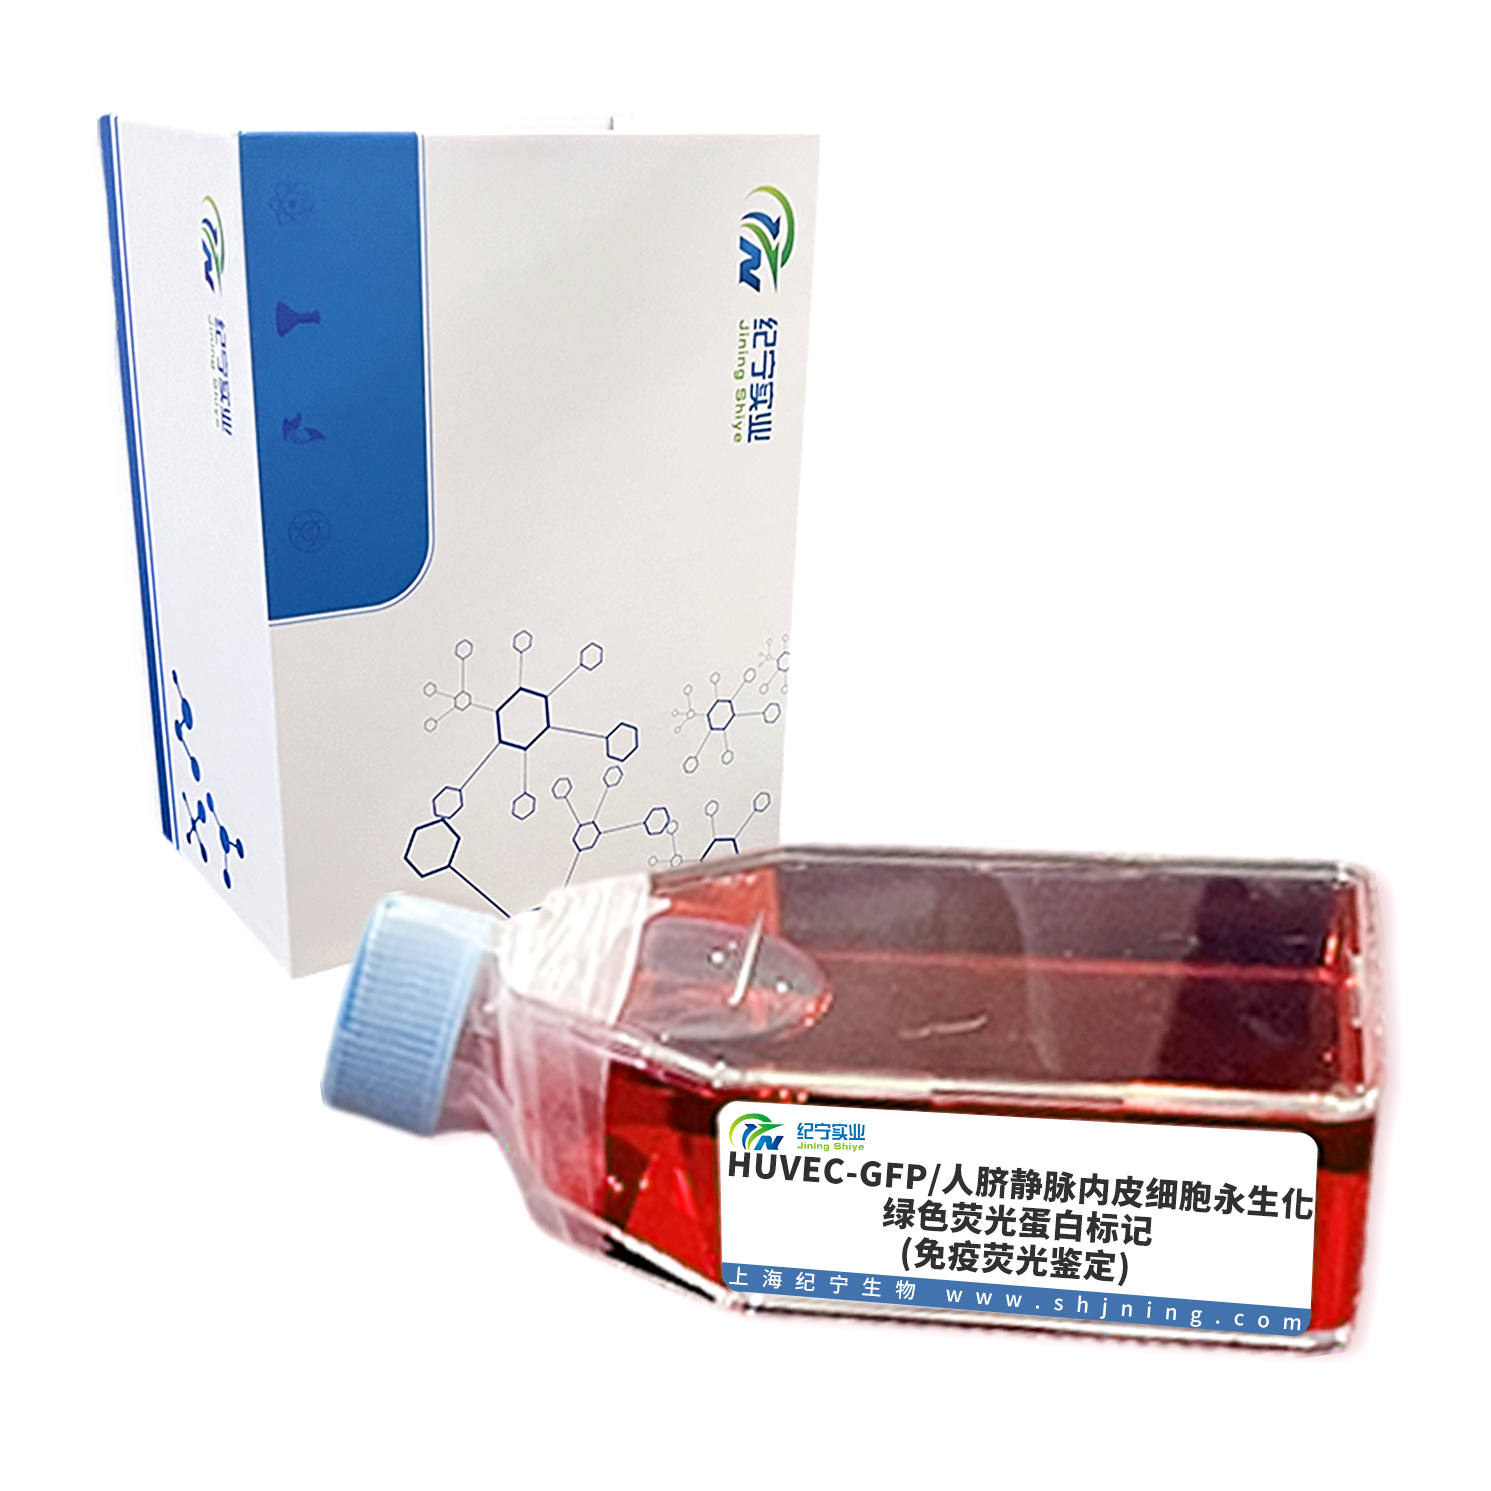 HUVEC-GFP/人脐静脉内皮细胞永生化-绿色荧光蛋白标记(免疫荧光鉴定)